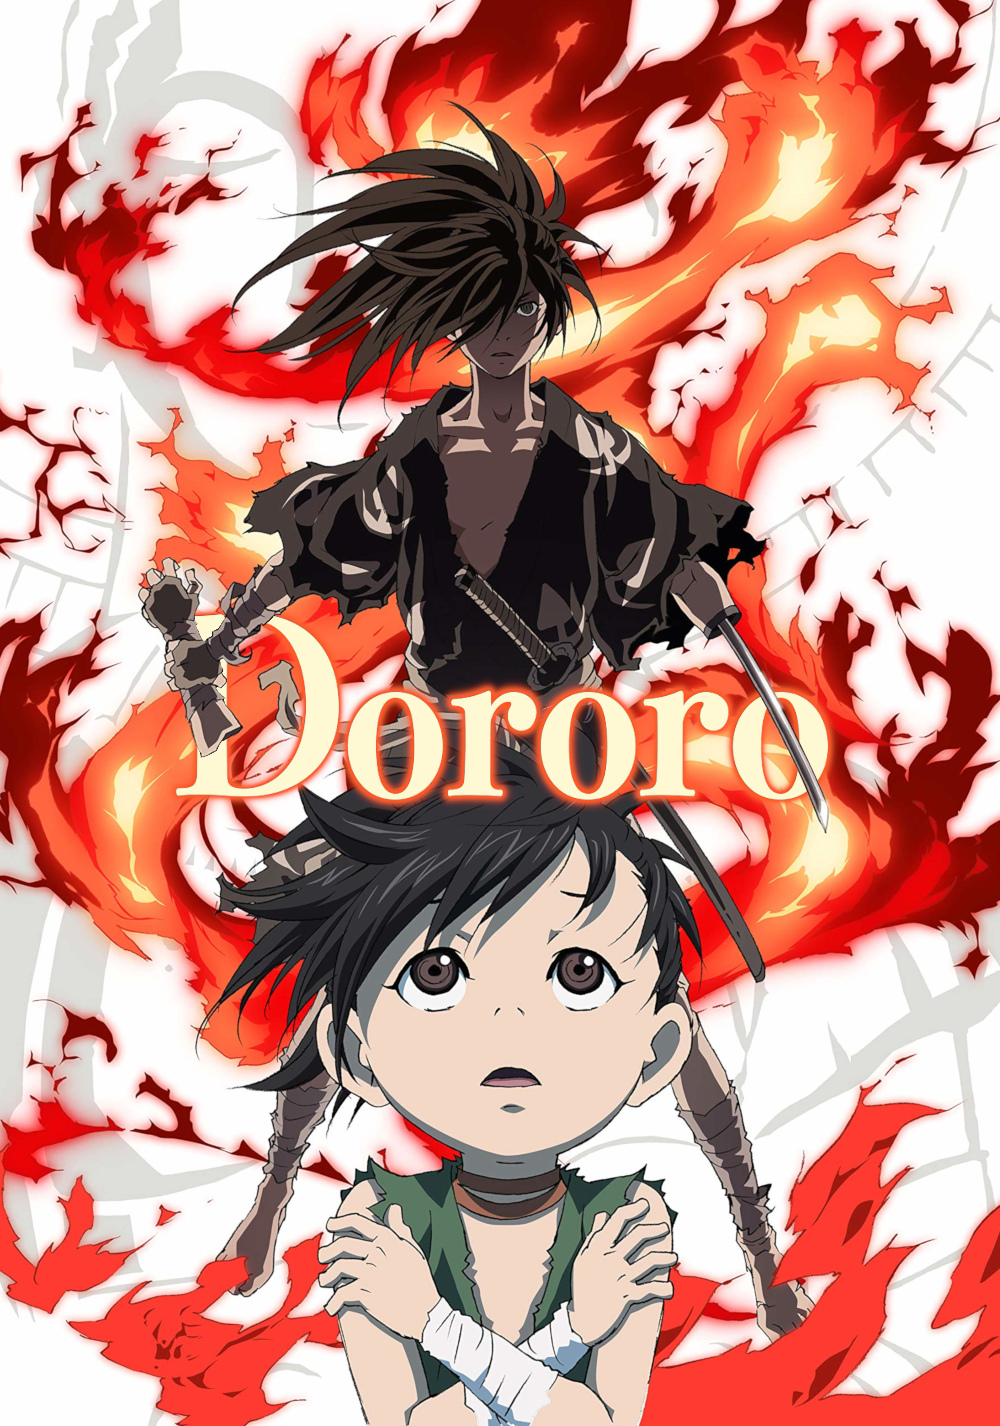 Dororo Official Trailer 